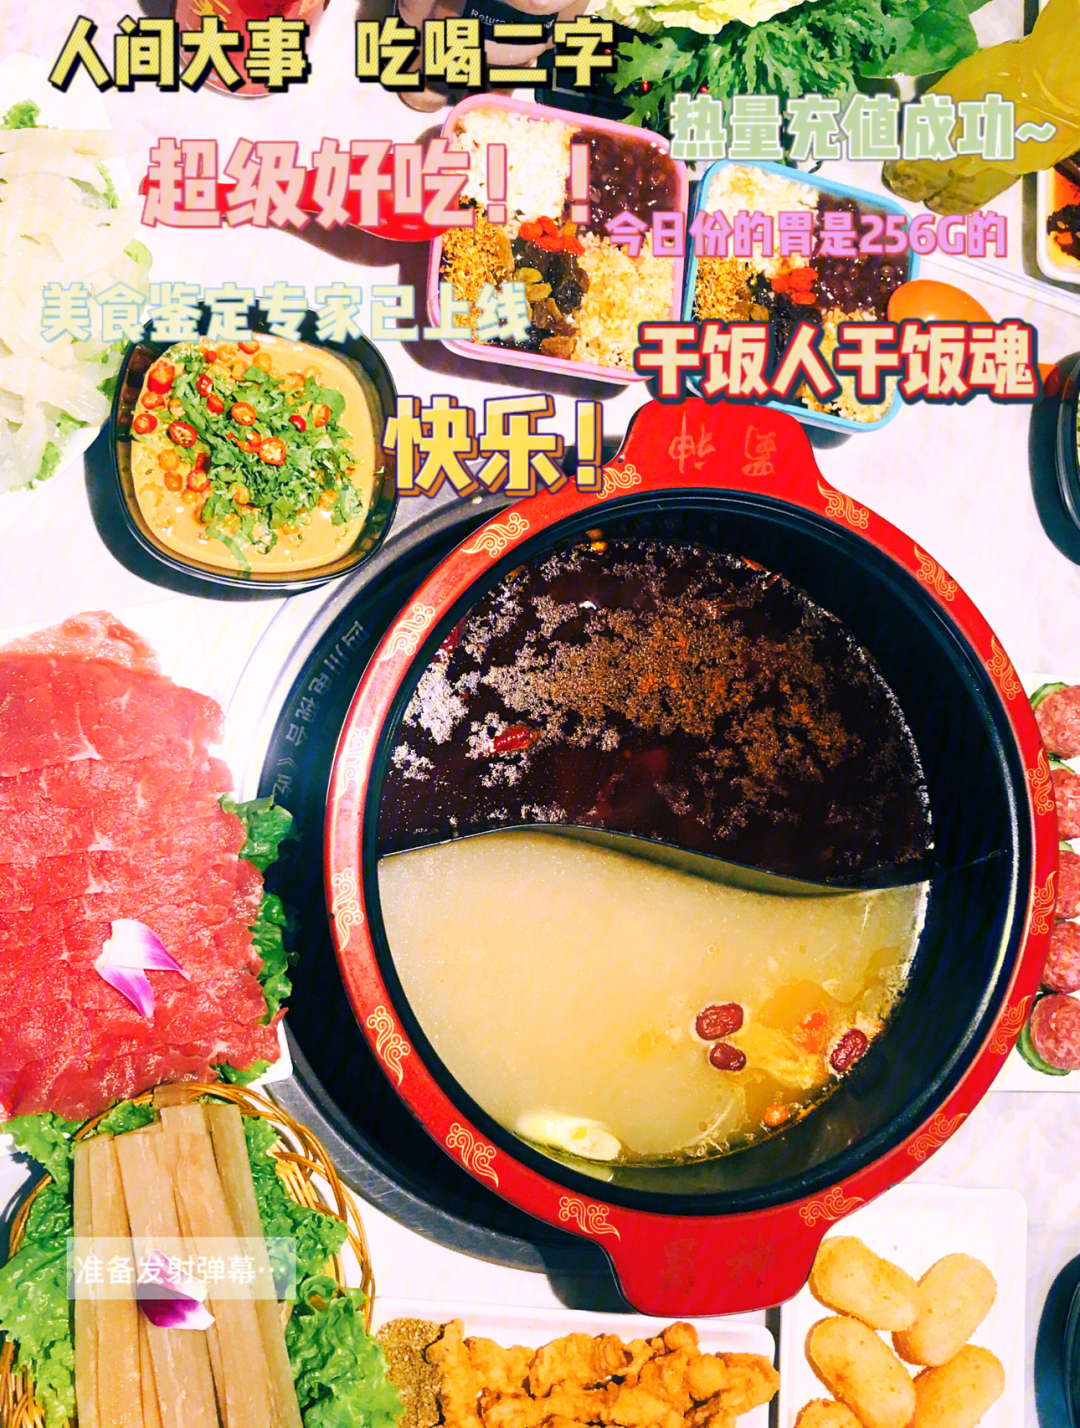 火锅串串丨在天津也能吃到的成都味道